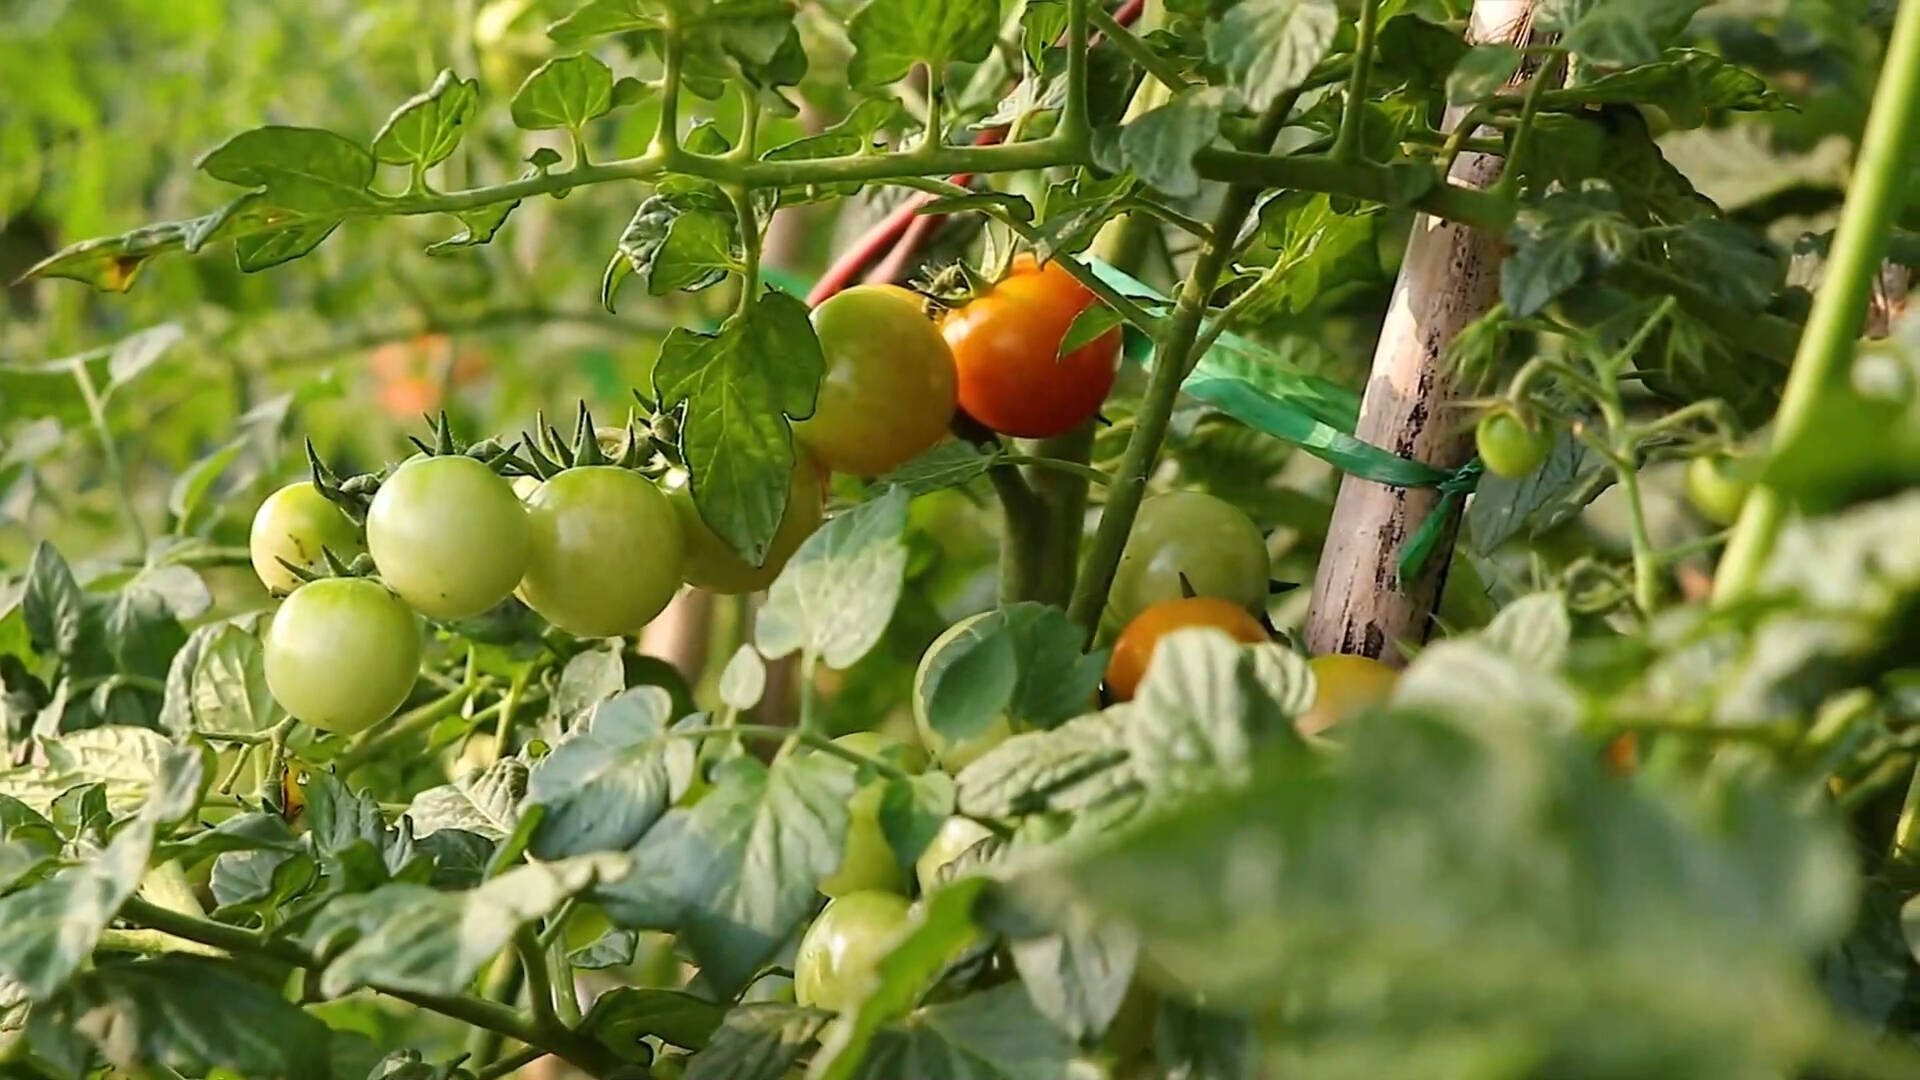 年供应番茄苗2000万株!枣庄这个地方的西红柿结出“致富果”